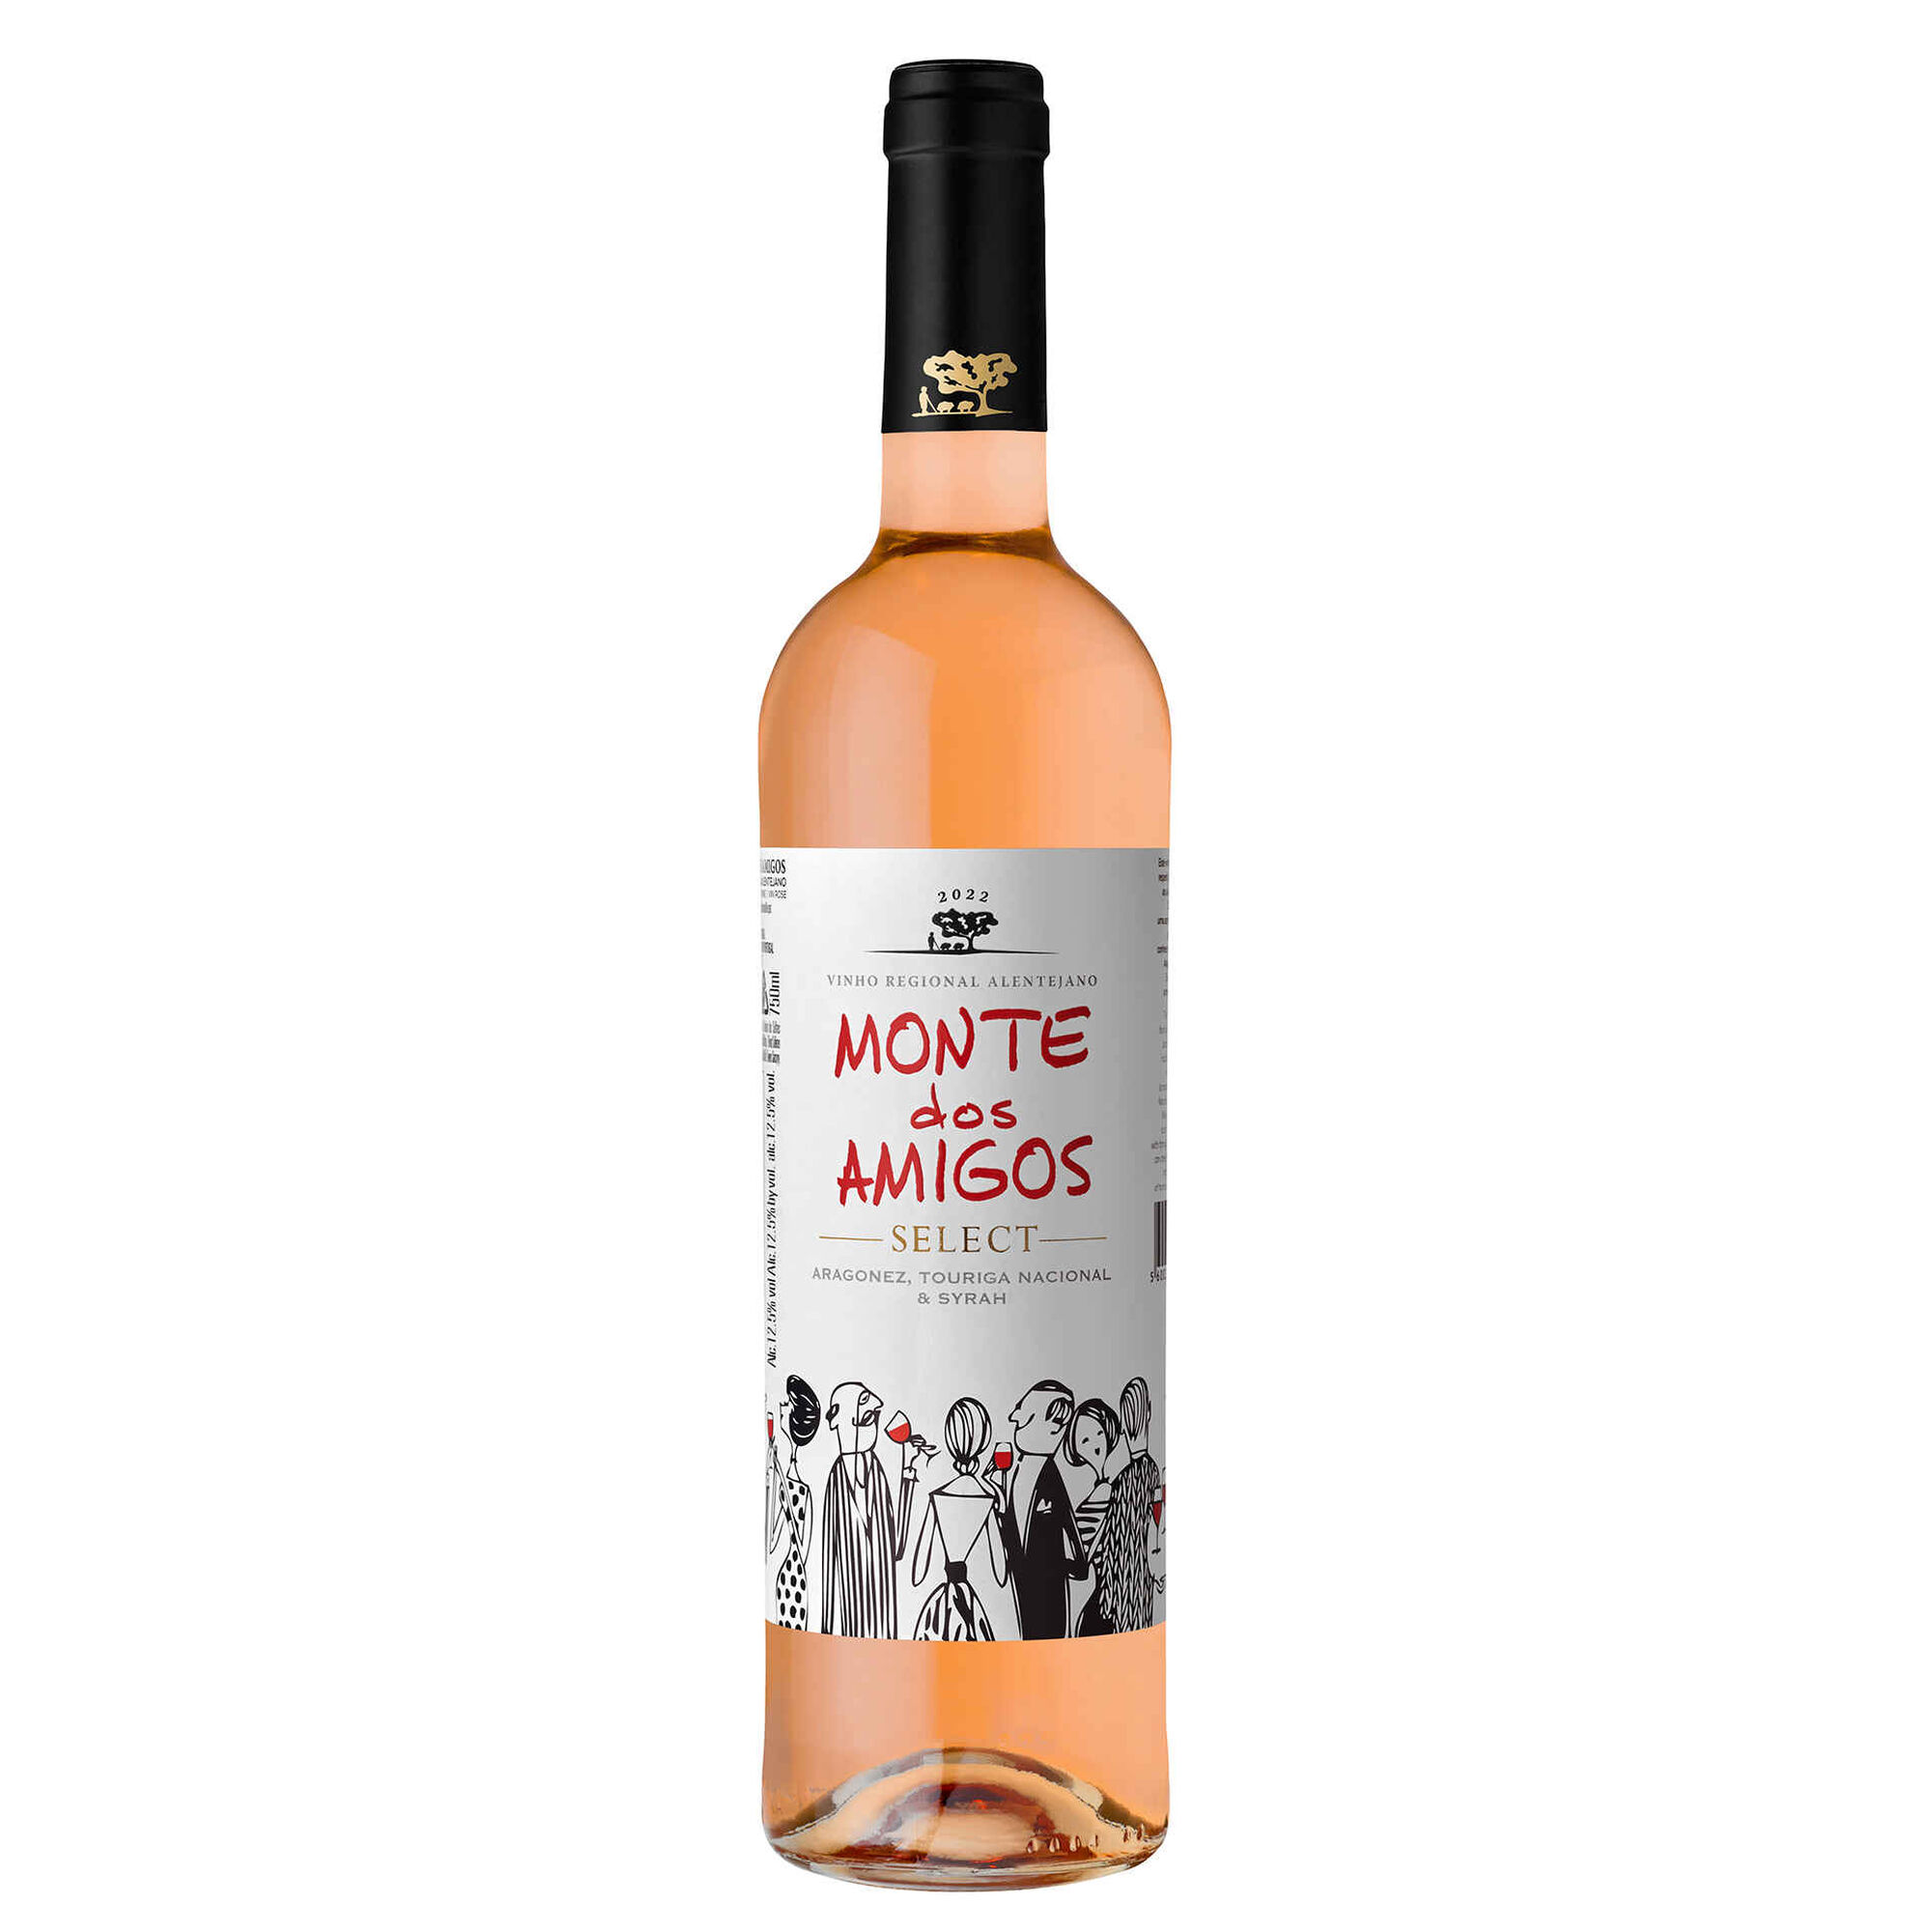 Monte dos Amigos Regional Alentejano Vinho Rosé